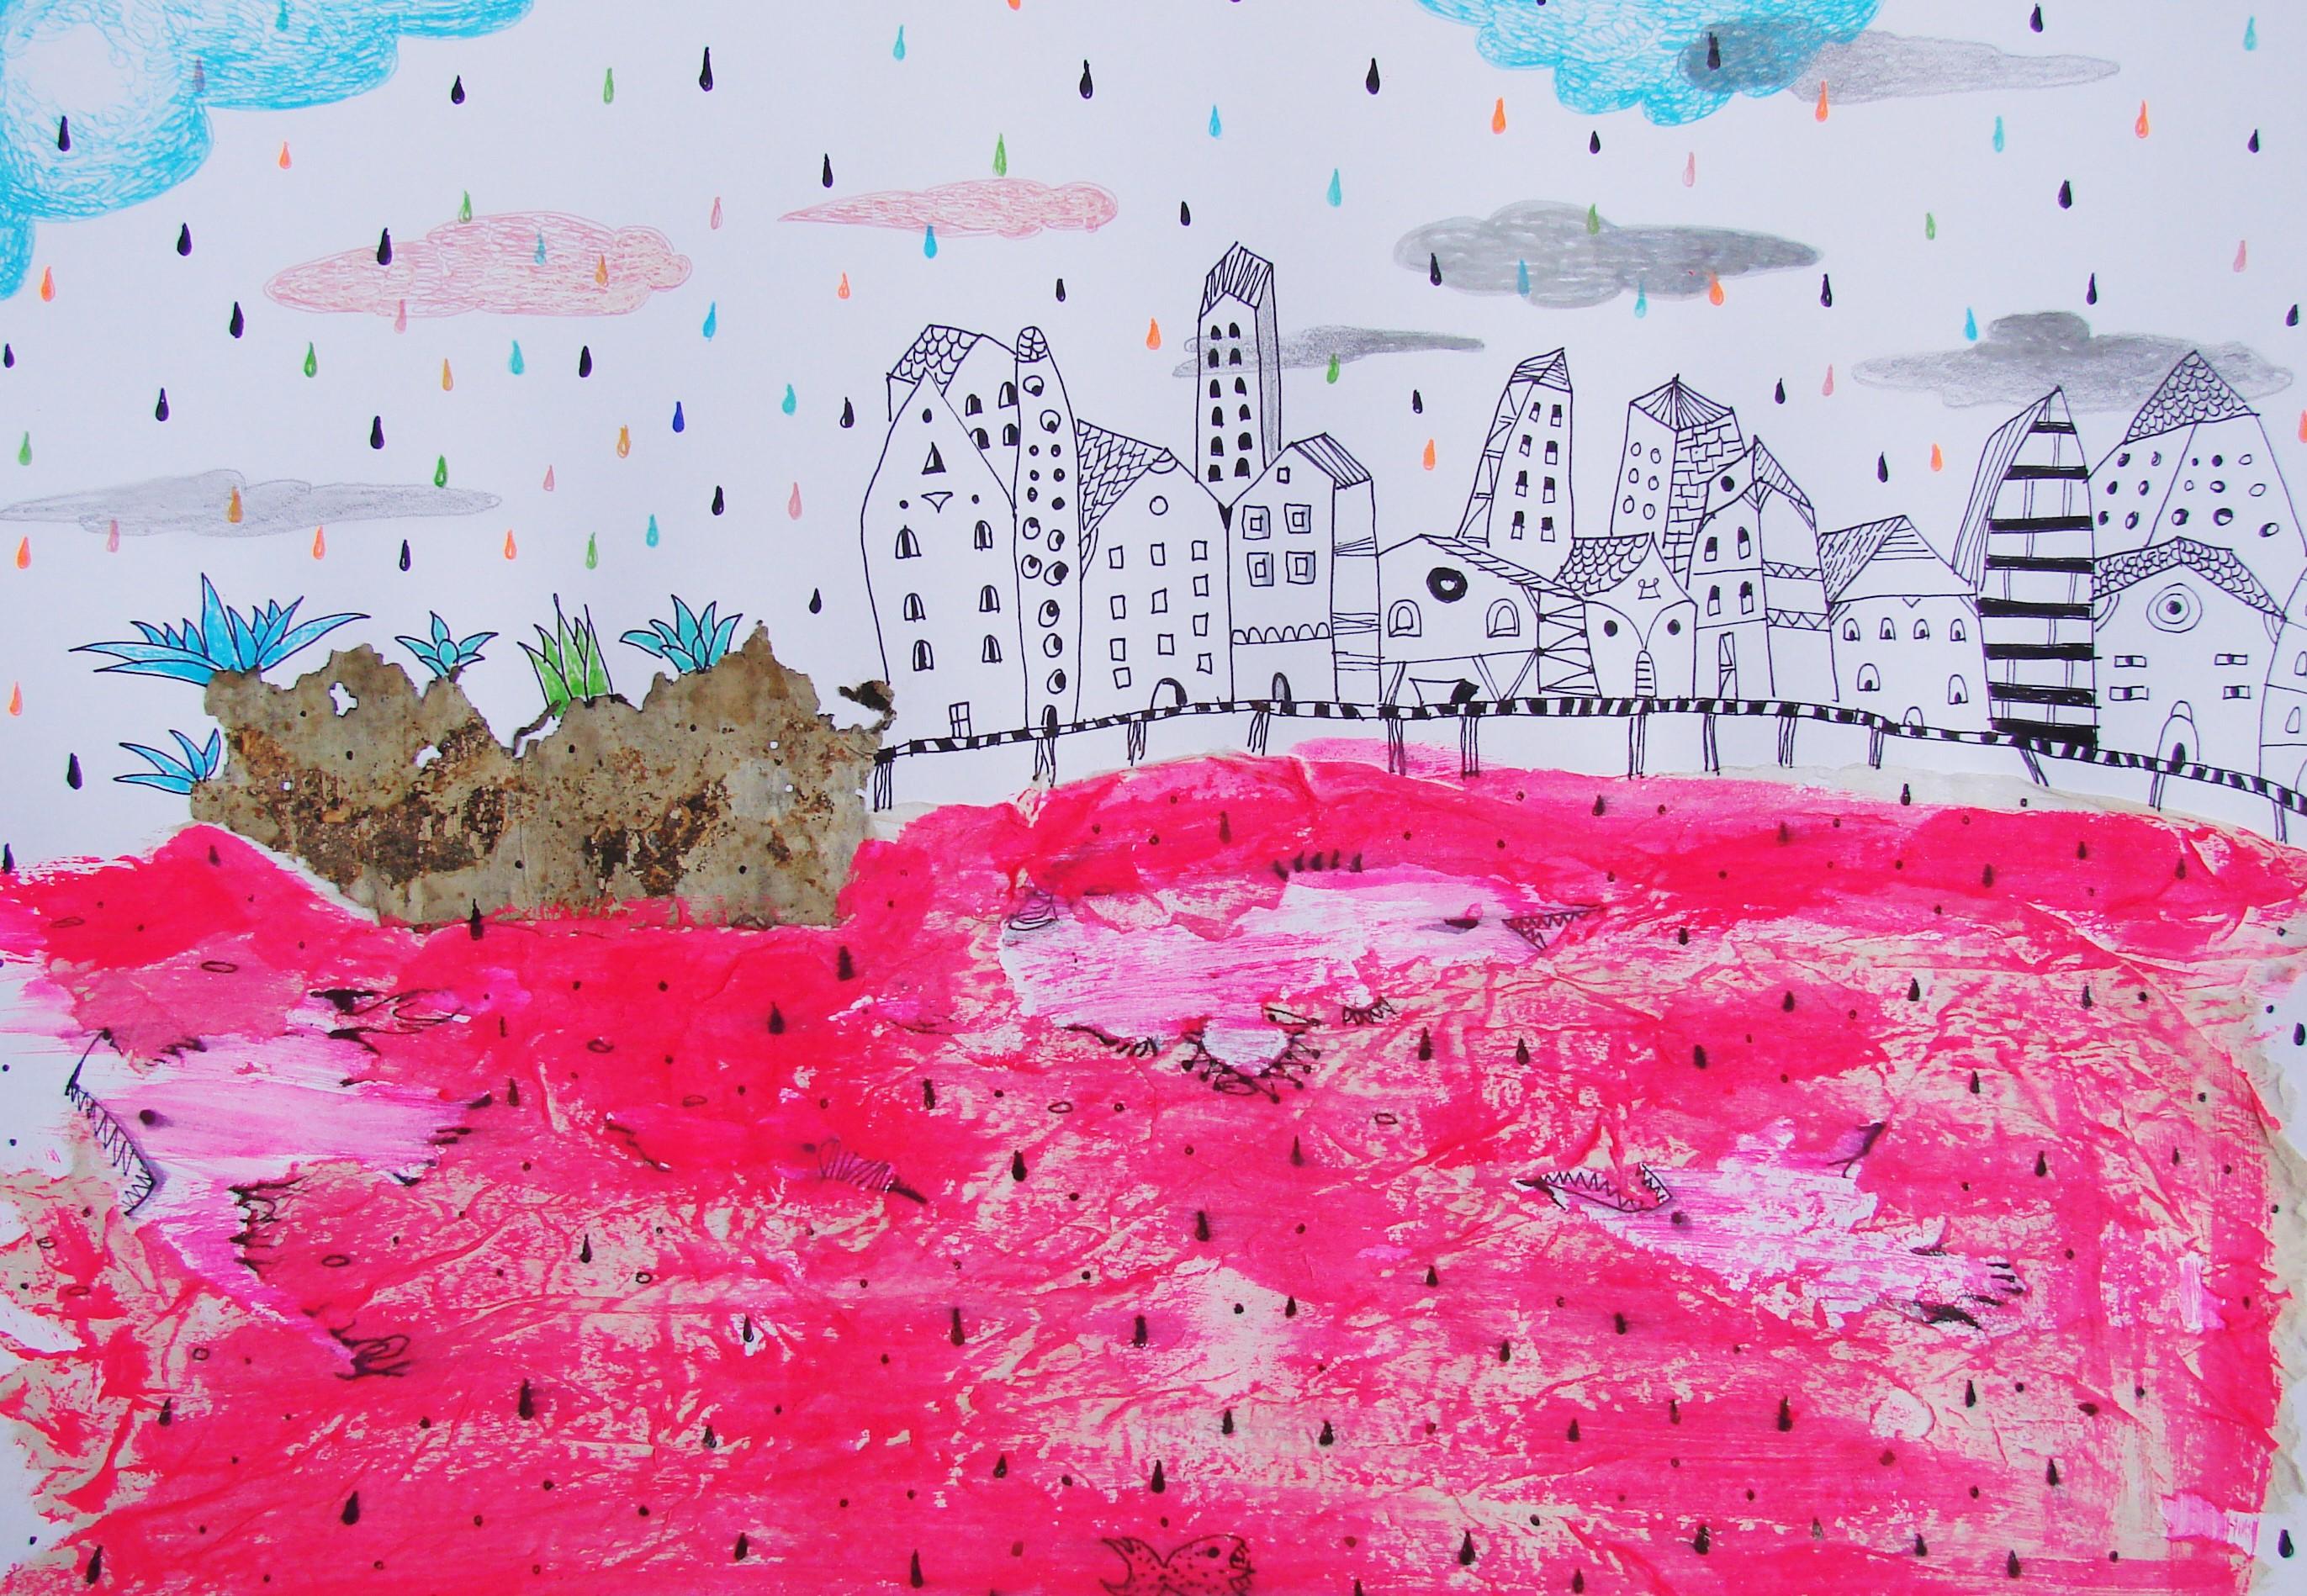 Dessins sur papier représentant la mer rouge - Contemporain, rose, onirique, figuratif - Surréalisme Art par Raluca Arnăutu